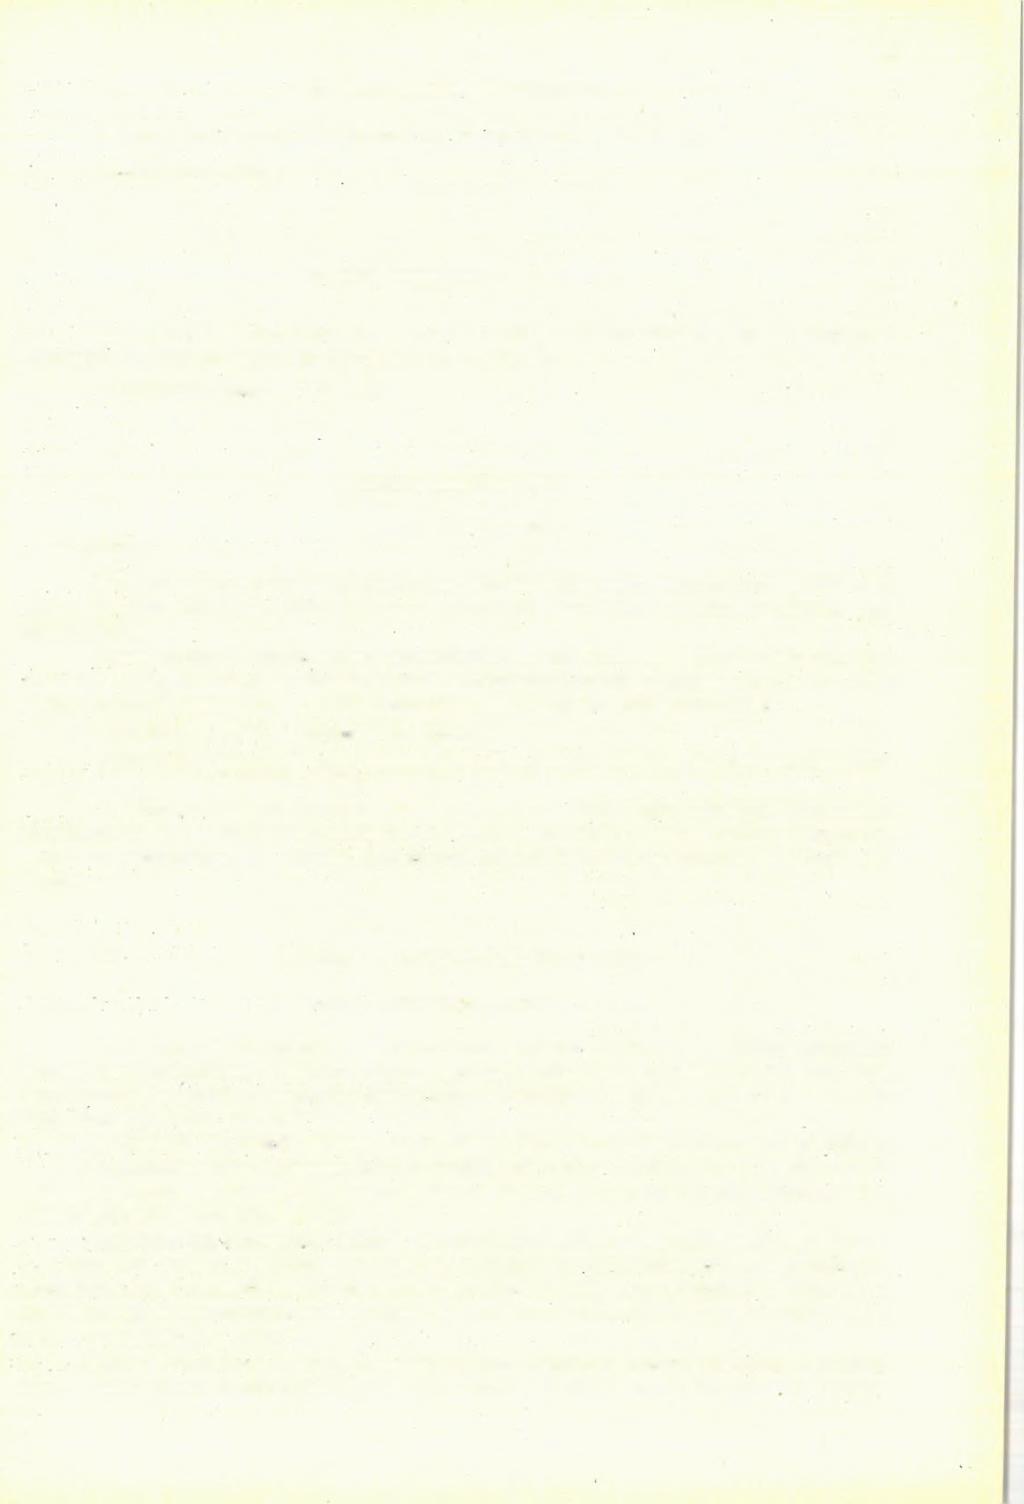 13 Fibularia pseudopusilla [Cotteau], 1895. Ezt az alakot Cotteau Szardíniából írta le. (21-18. III. t., 7 10. ábra.) LELŐ H E LY : Zukovce. Fibularia lecointreae L ambert, 1907.